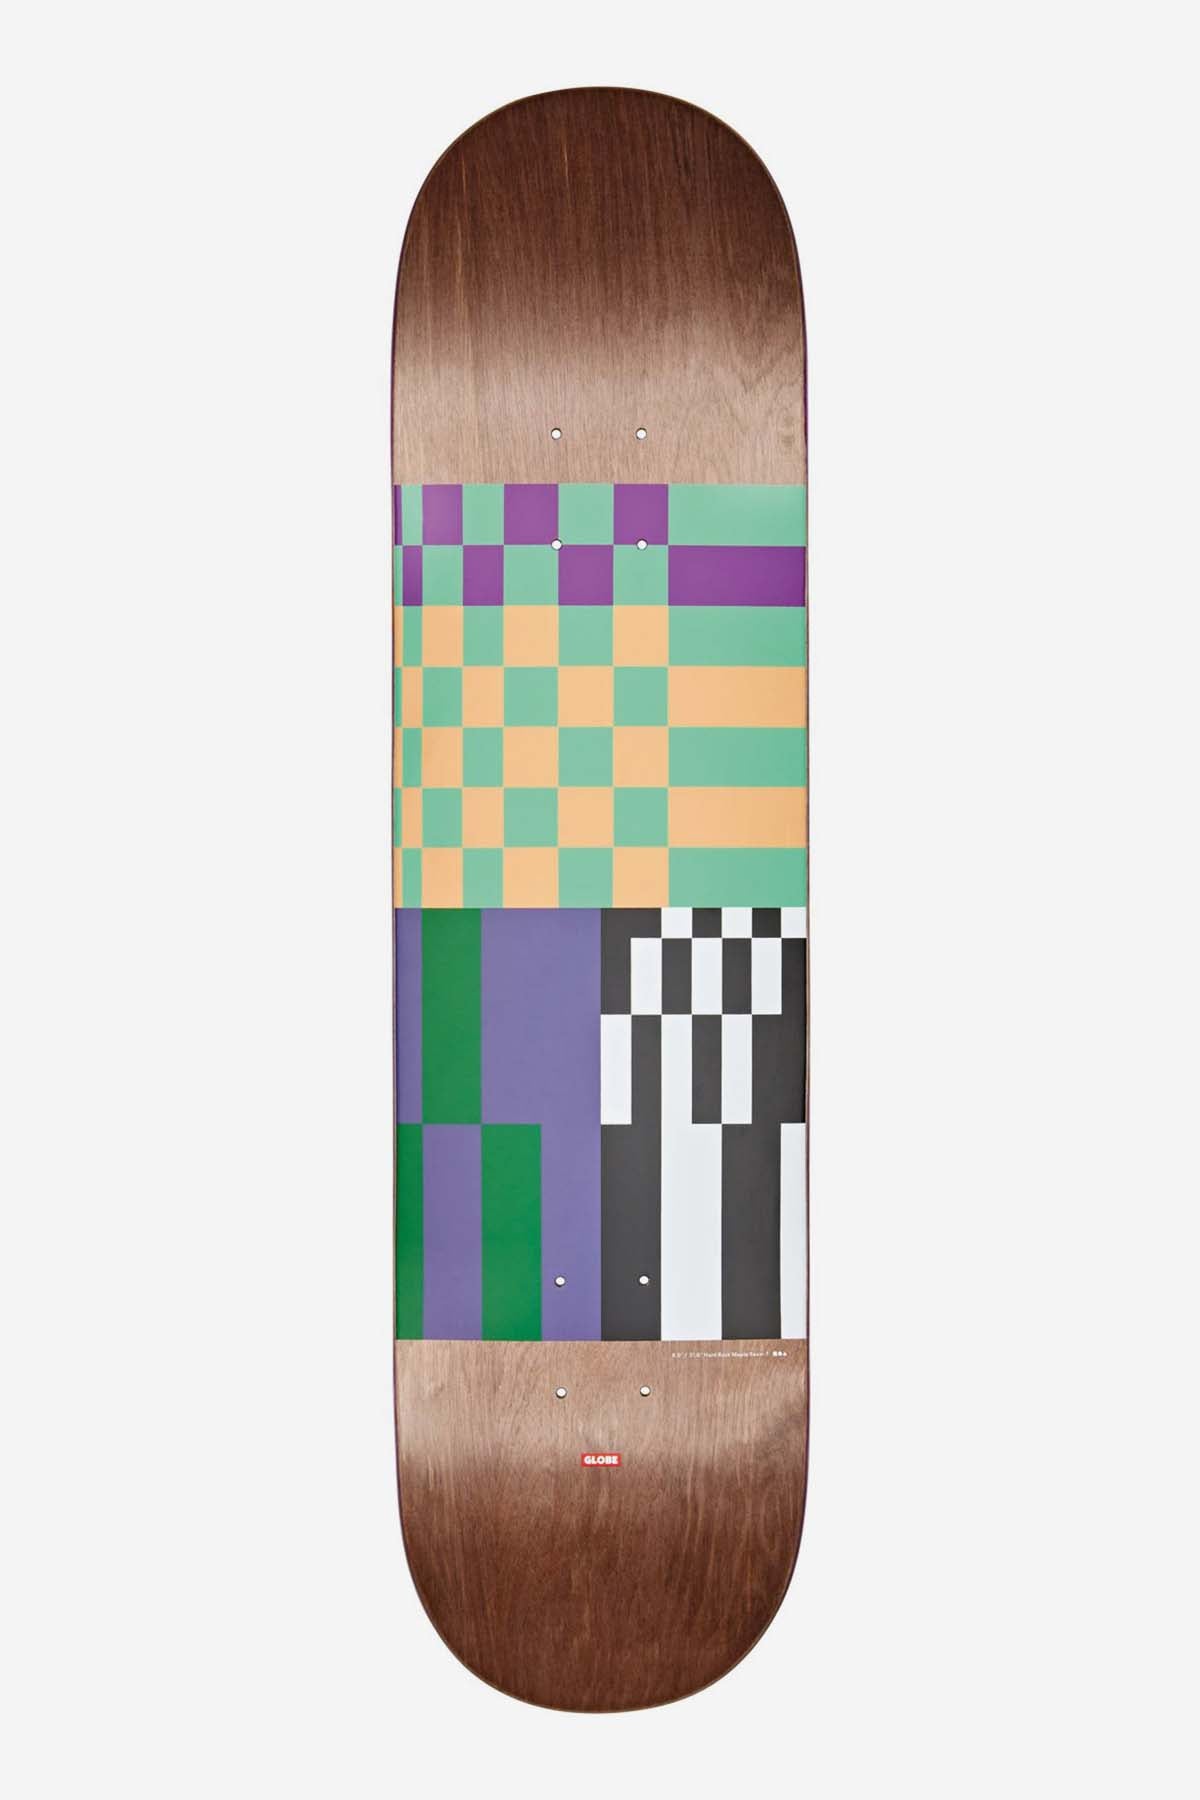 Globe - G2 Check, Please - Dark Maple/Grunge - 8.0" Skateboard Deck